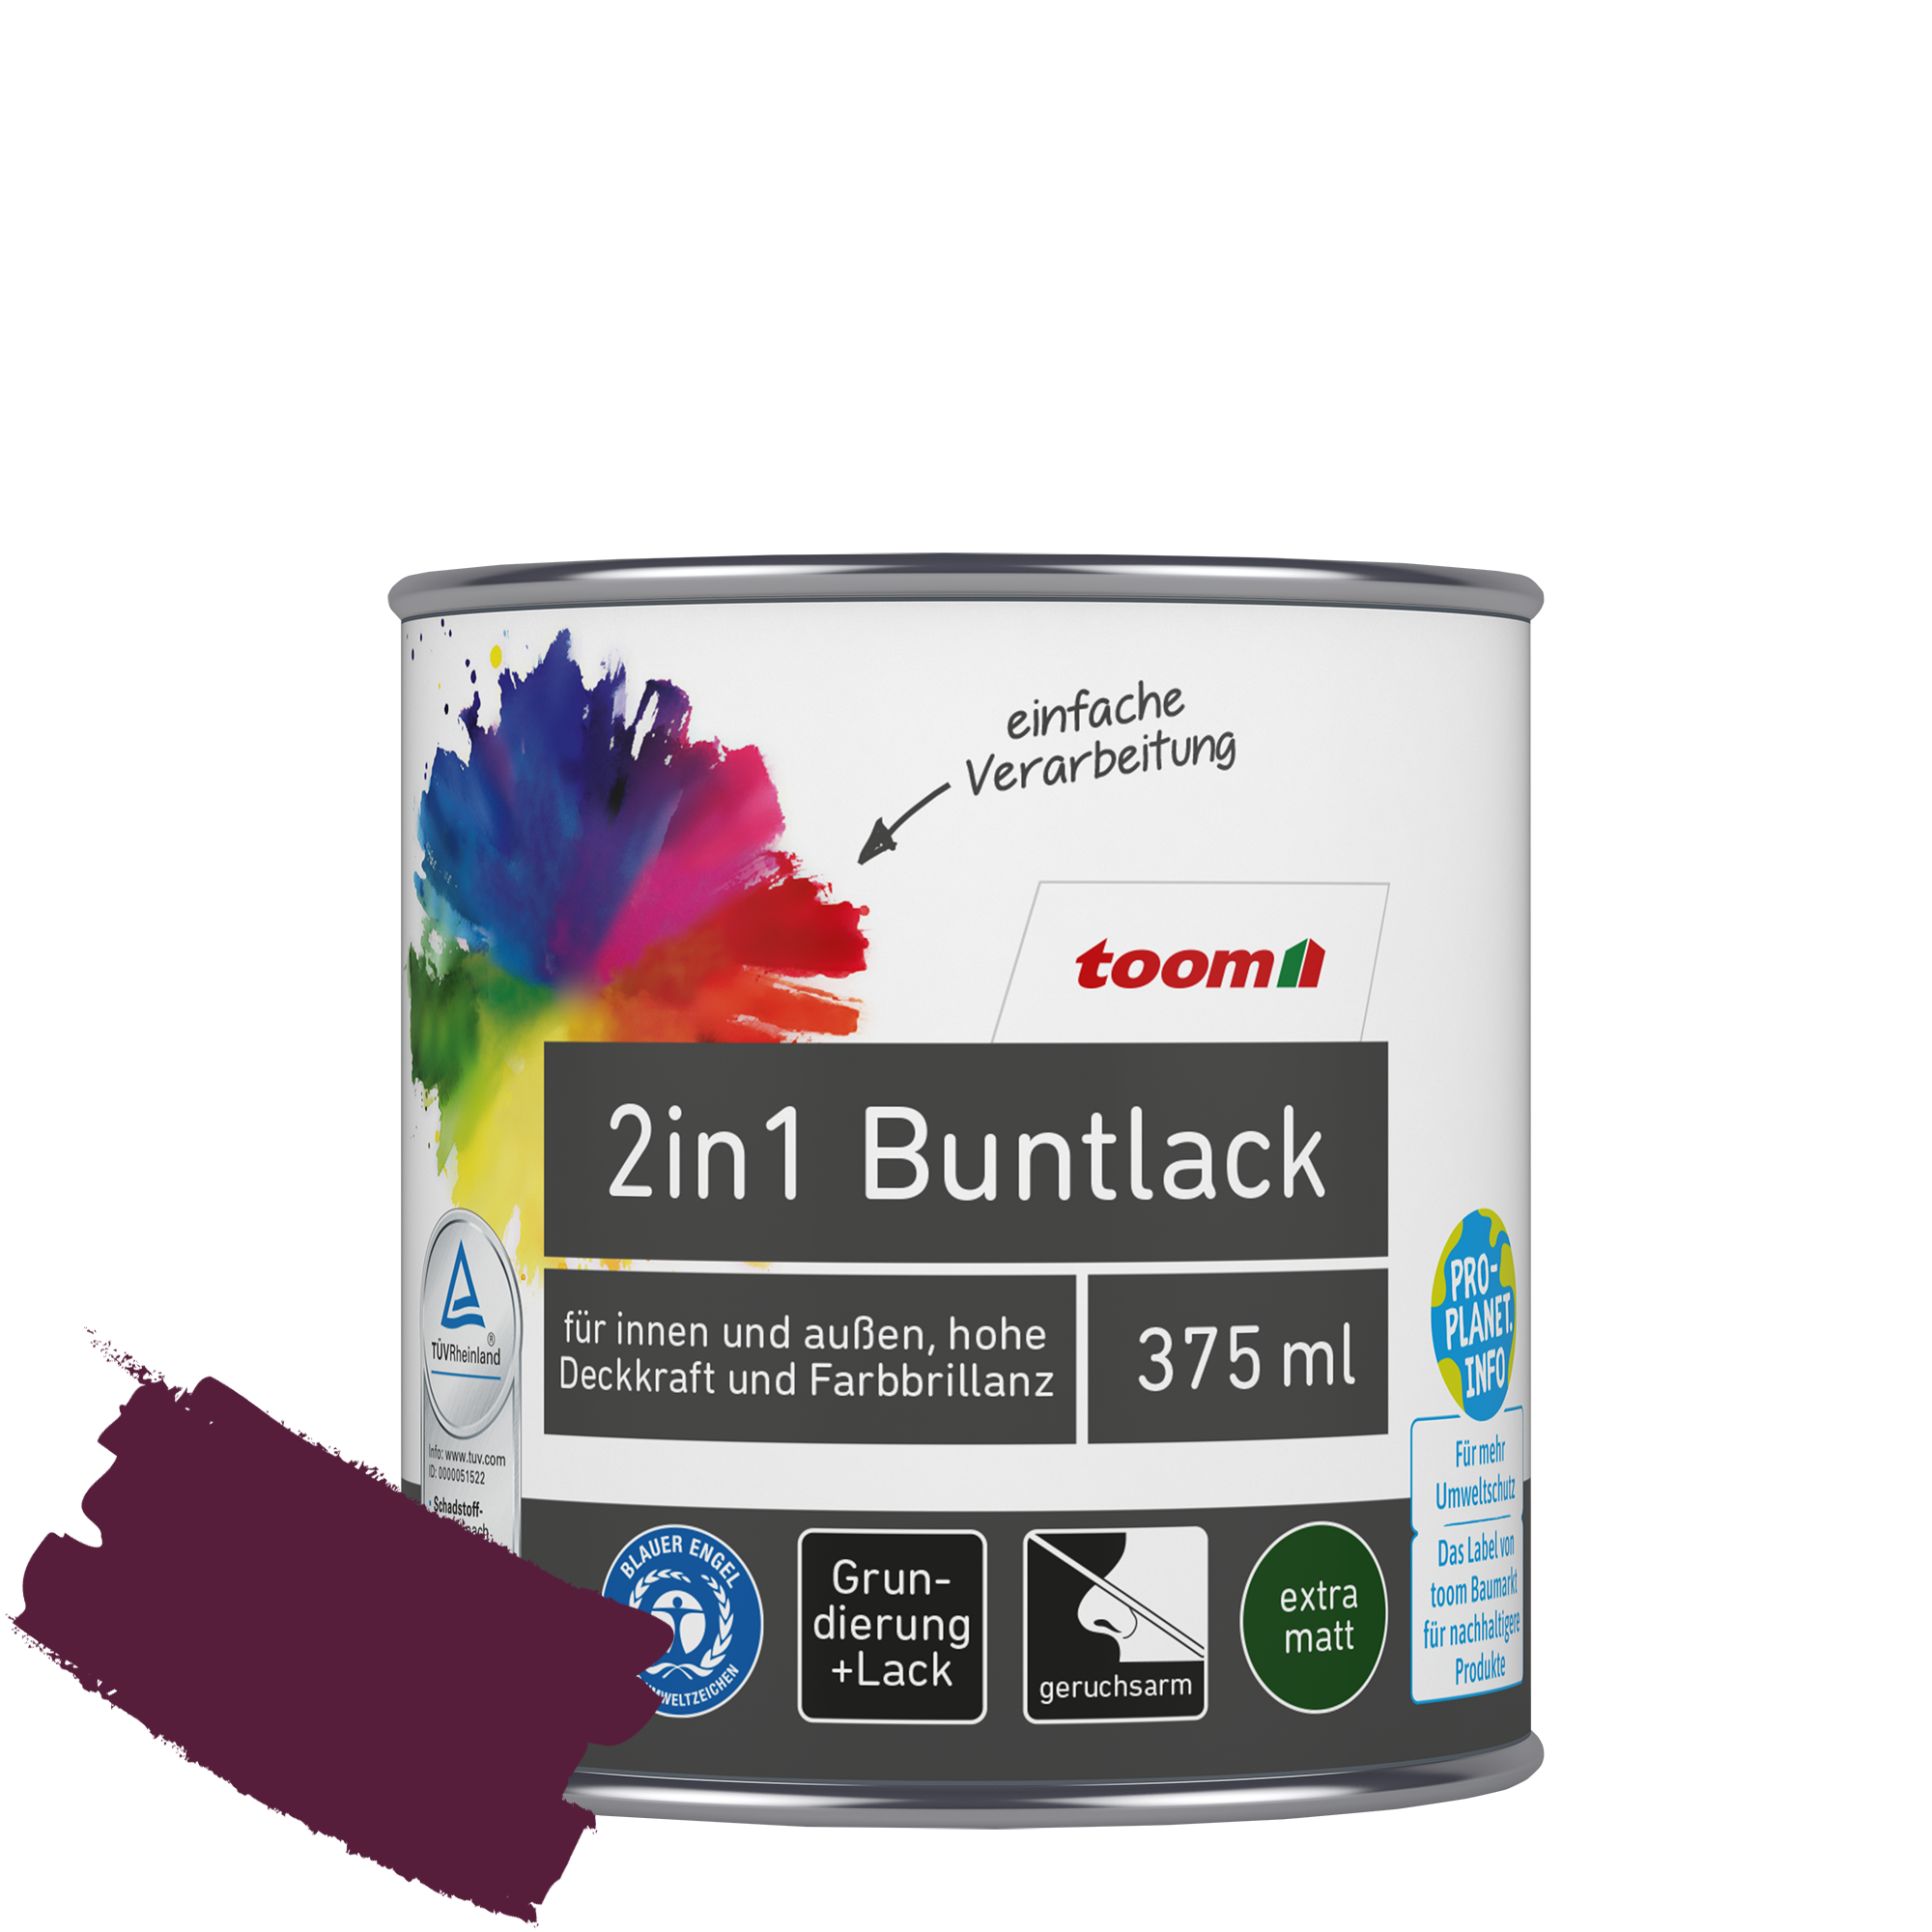 2in1 Buntlack merlotfarben matt 375 ml + product picture